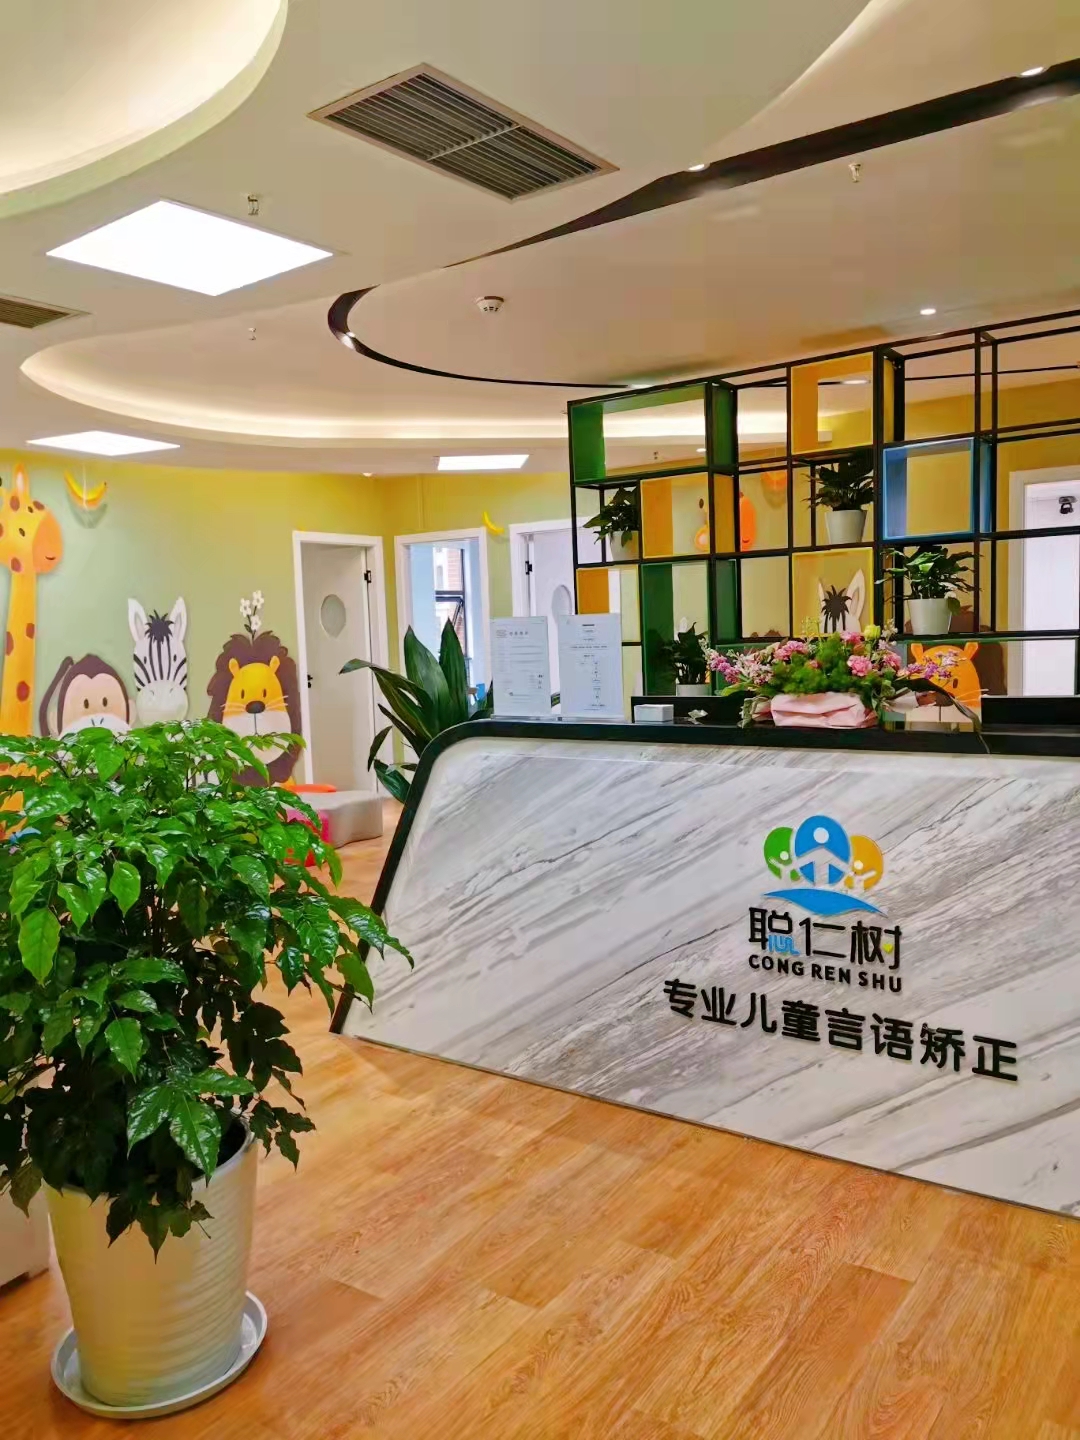 重庆市聪仁树儿童康复中心